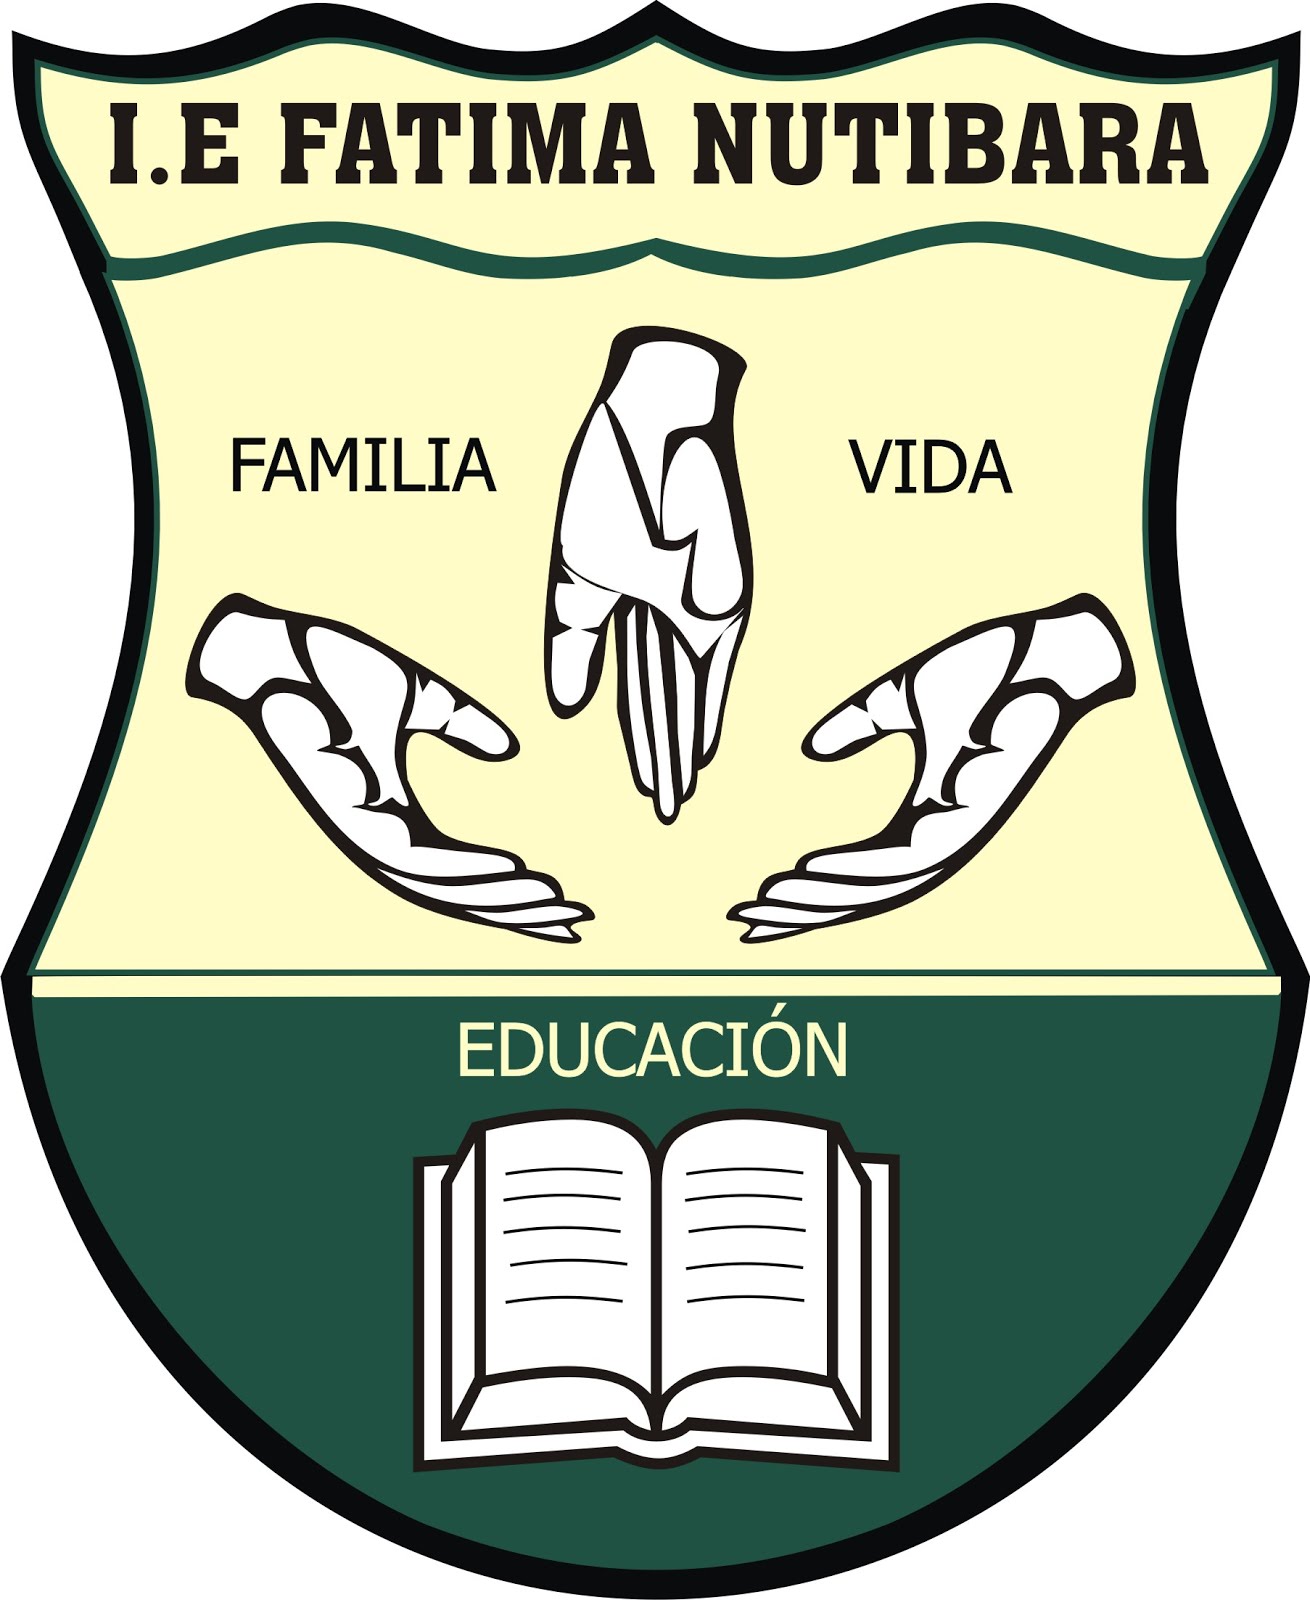 I.E Fatima Nutibara